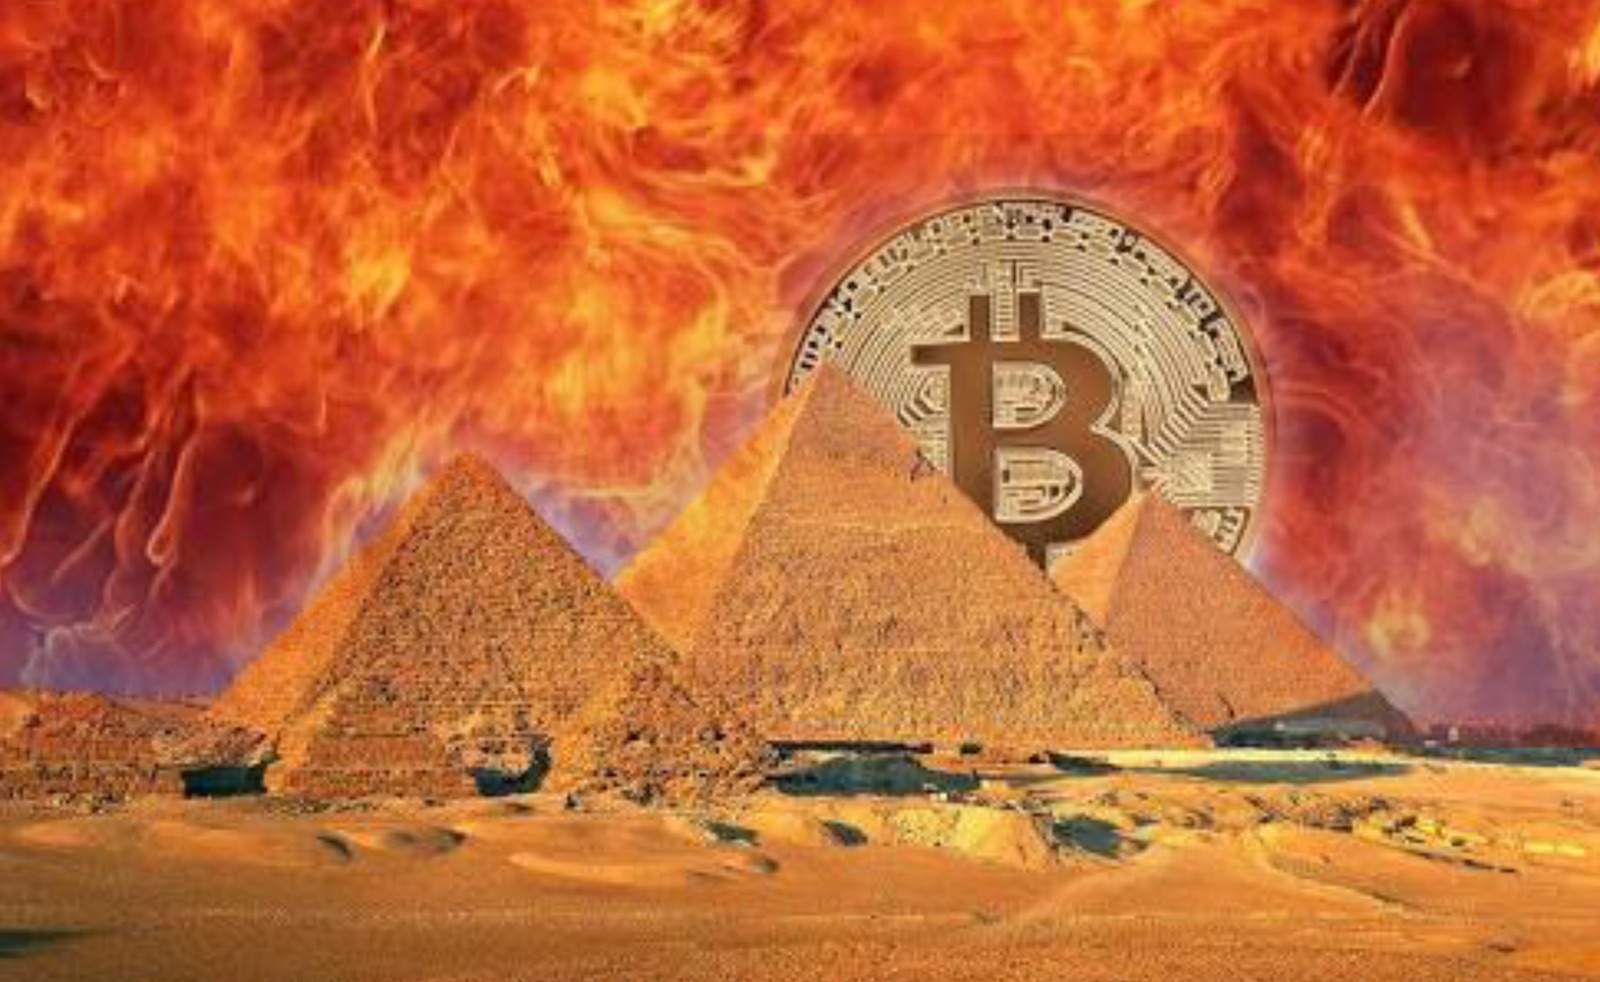 Egyptian Dar Al Ifta Announces Bitcoin is Haram